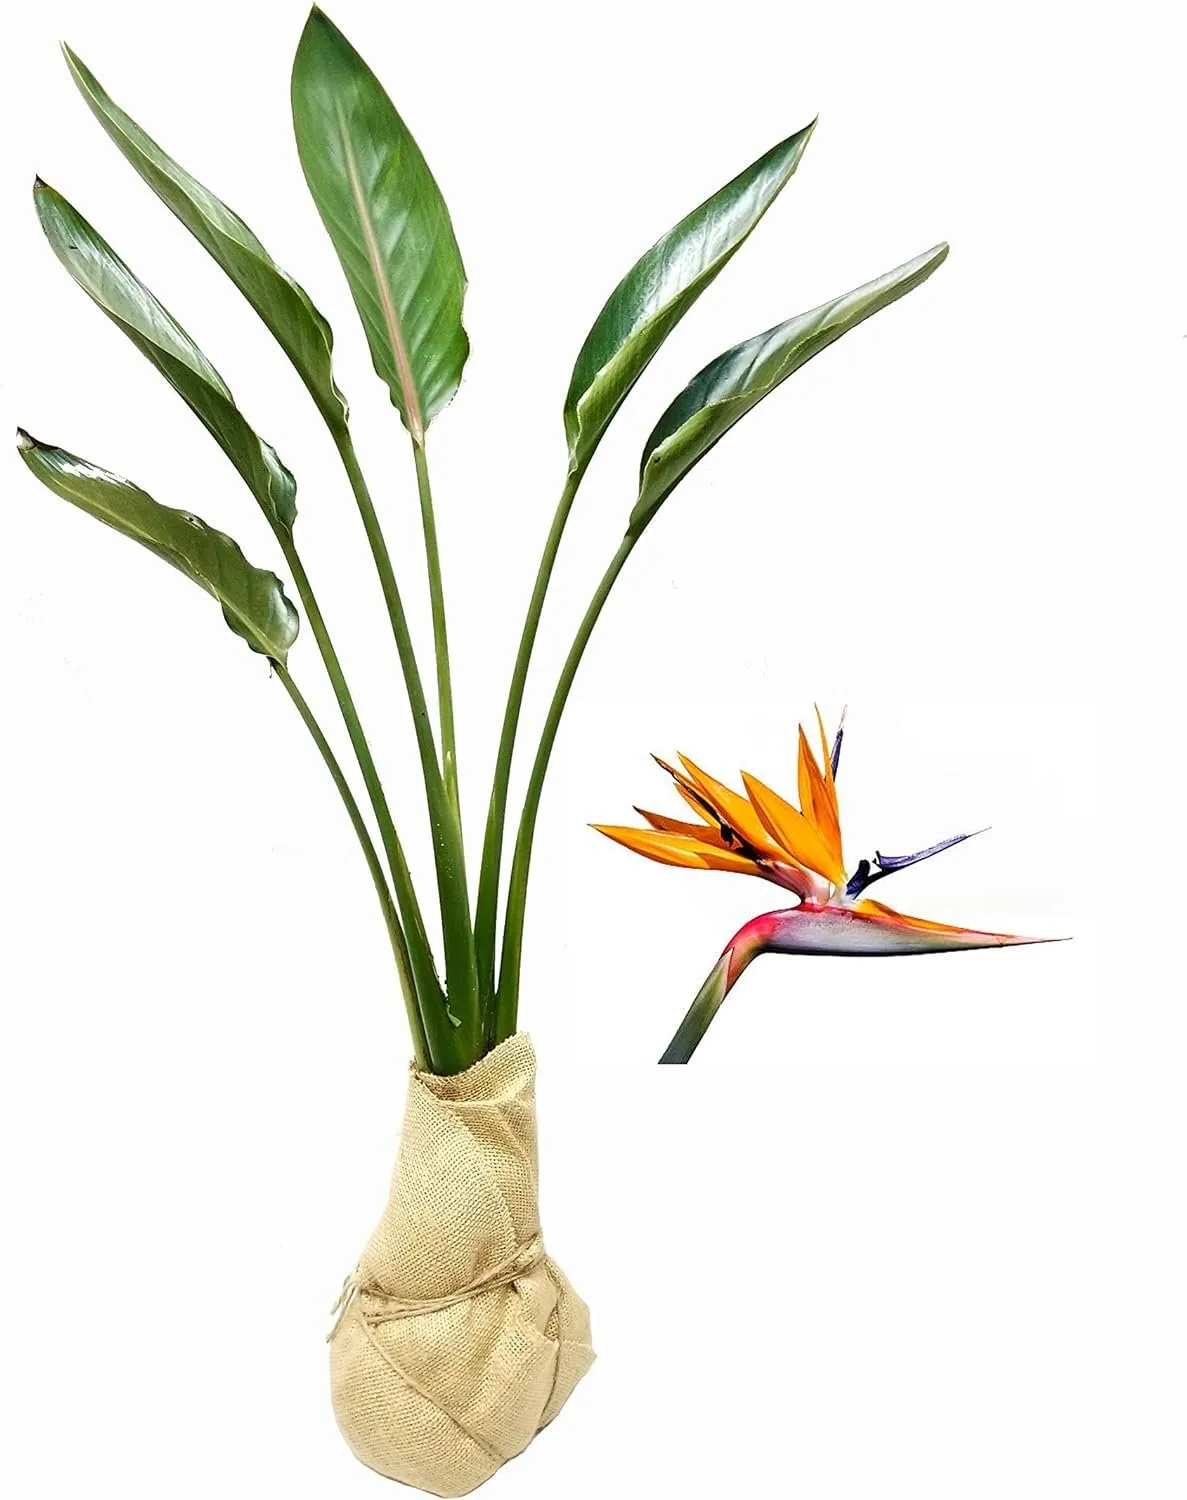 Primary image for Orange Bird of Paradise Strelitzia Reginae Large Live Plant Tropical